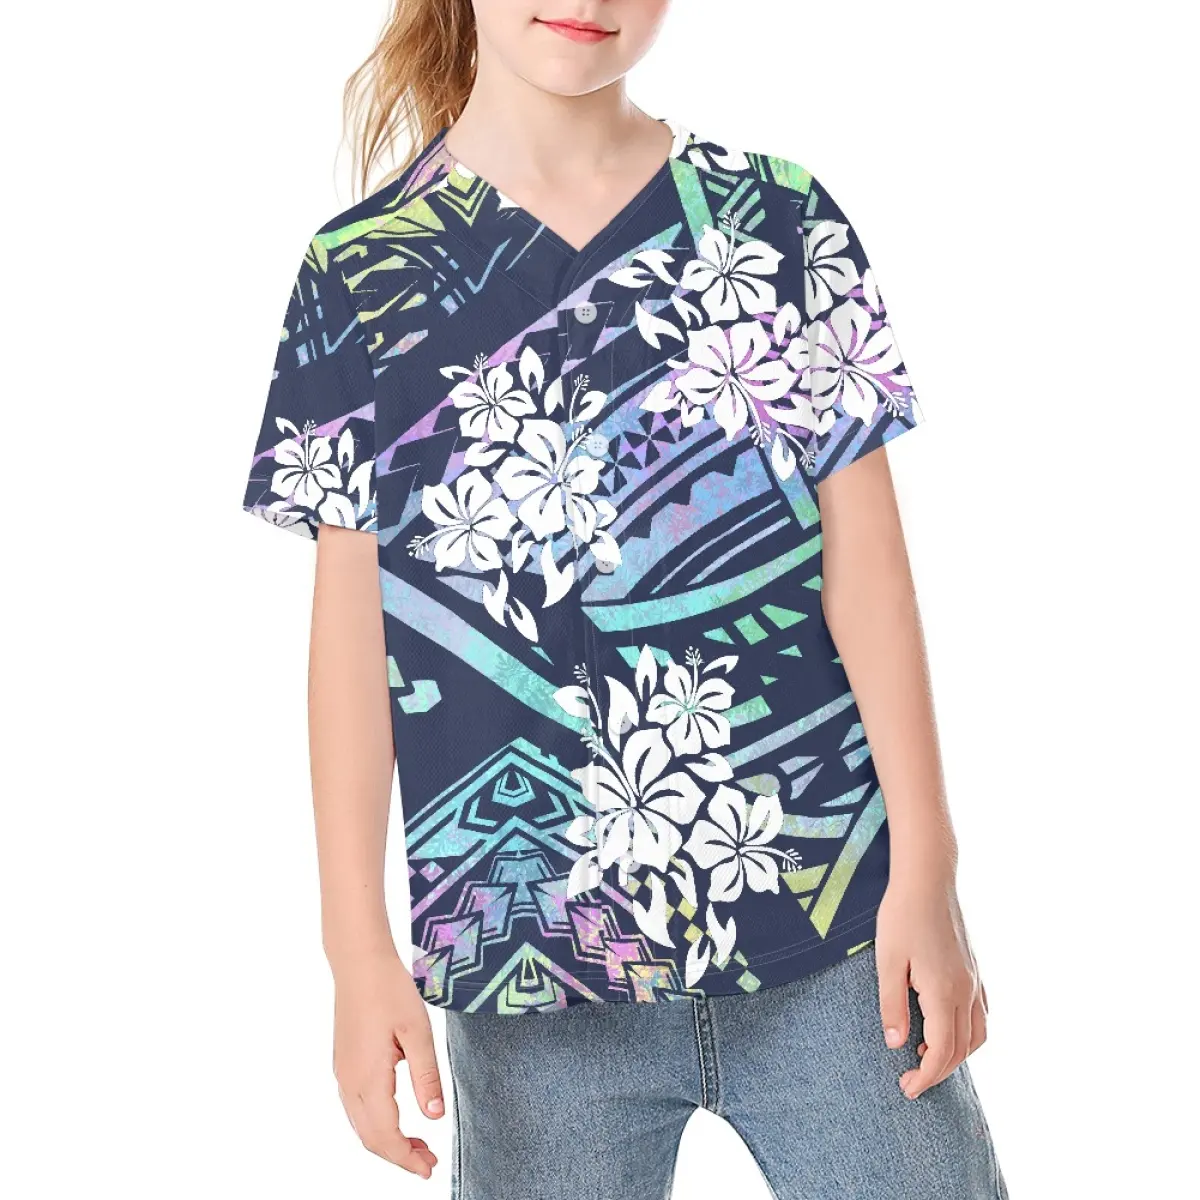 Erkek kız kısa kollu gömlek Hibiscus çiçekler tasarımlar çocuklar Chidren için spor beyzbol formaları Dropship bebek yaz jarse bluz